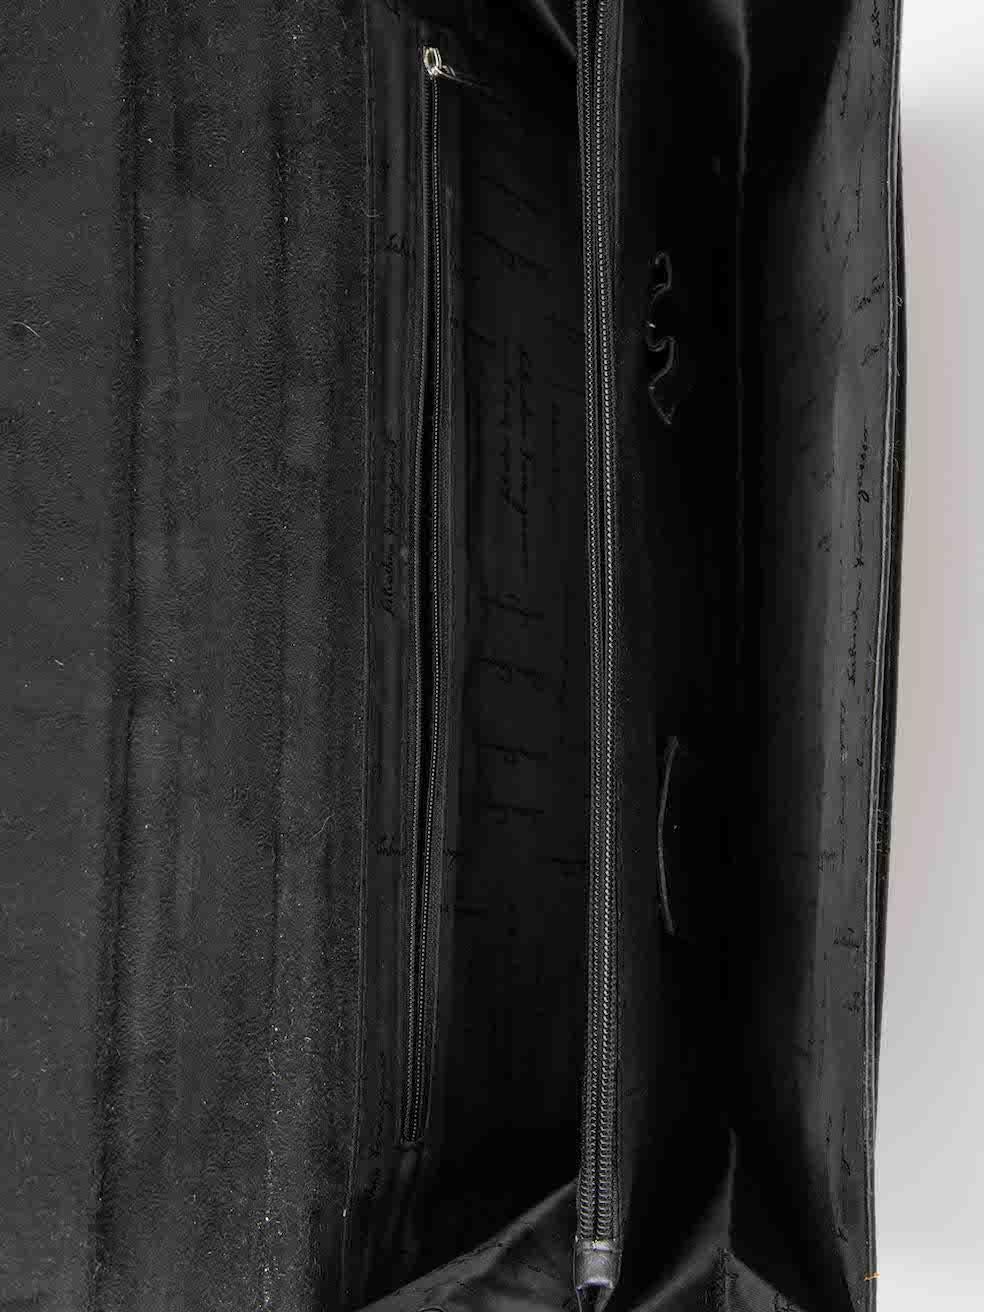 Salvatore Ferragamo Women's Black Leather Document File Briefcase 1